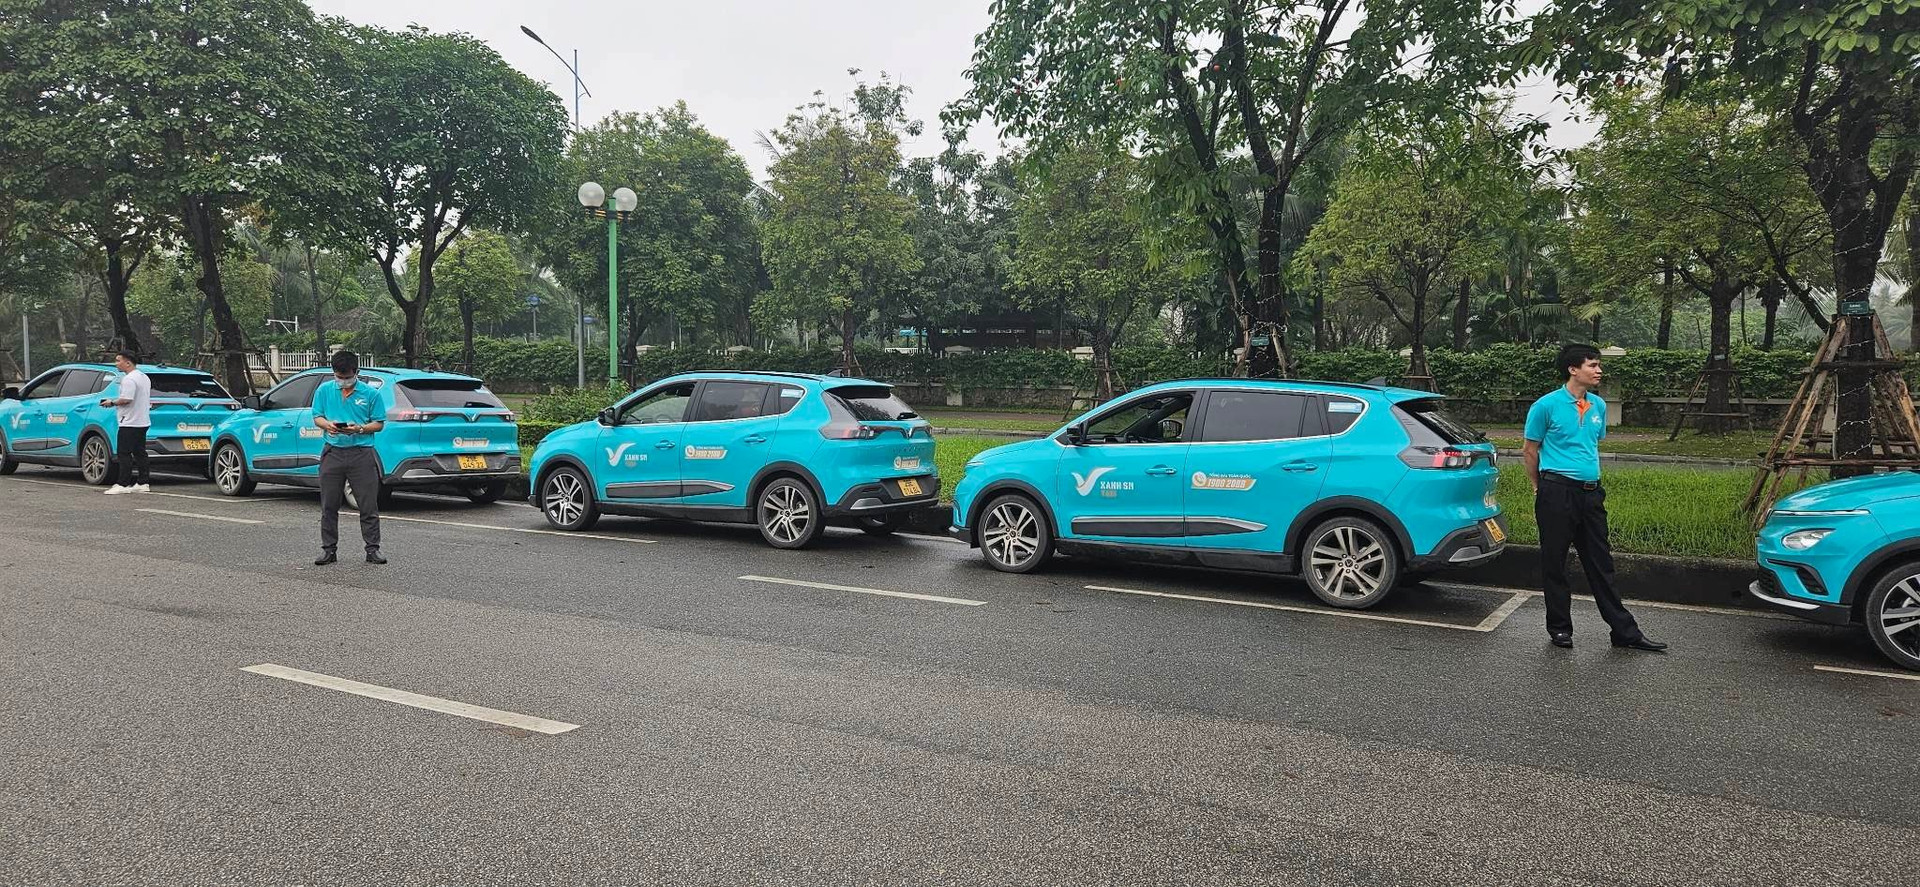 Hãng taxi điện của ông Phạm Nhật Vượng chính thức vận hành tại Hà Nội: quy mô ban đầu 500 xe VF e34, 100 xe VF8, sẽ ‘Nam tiến’ ngay trong tháng này - Ảnh 1.